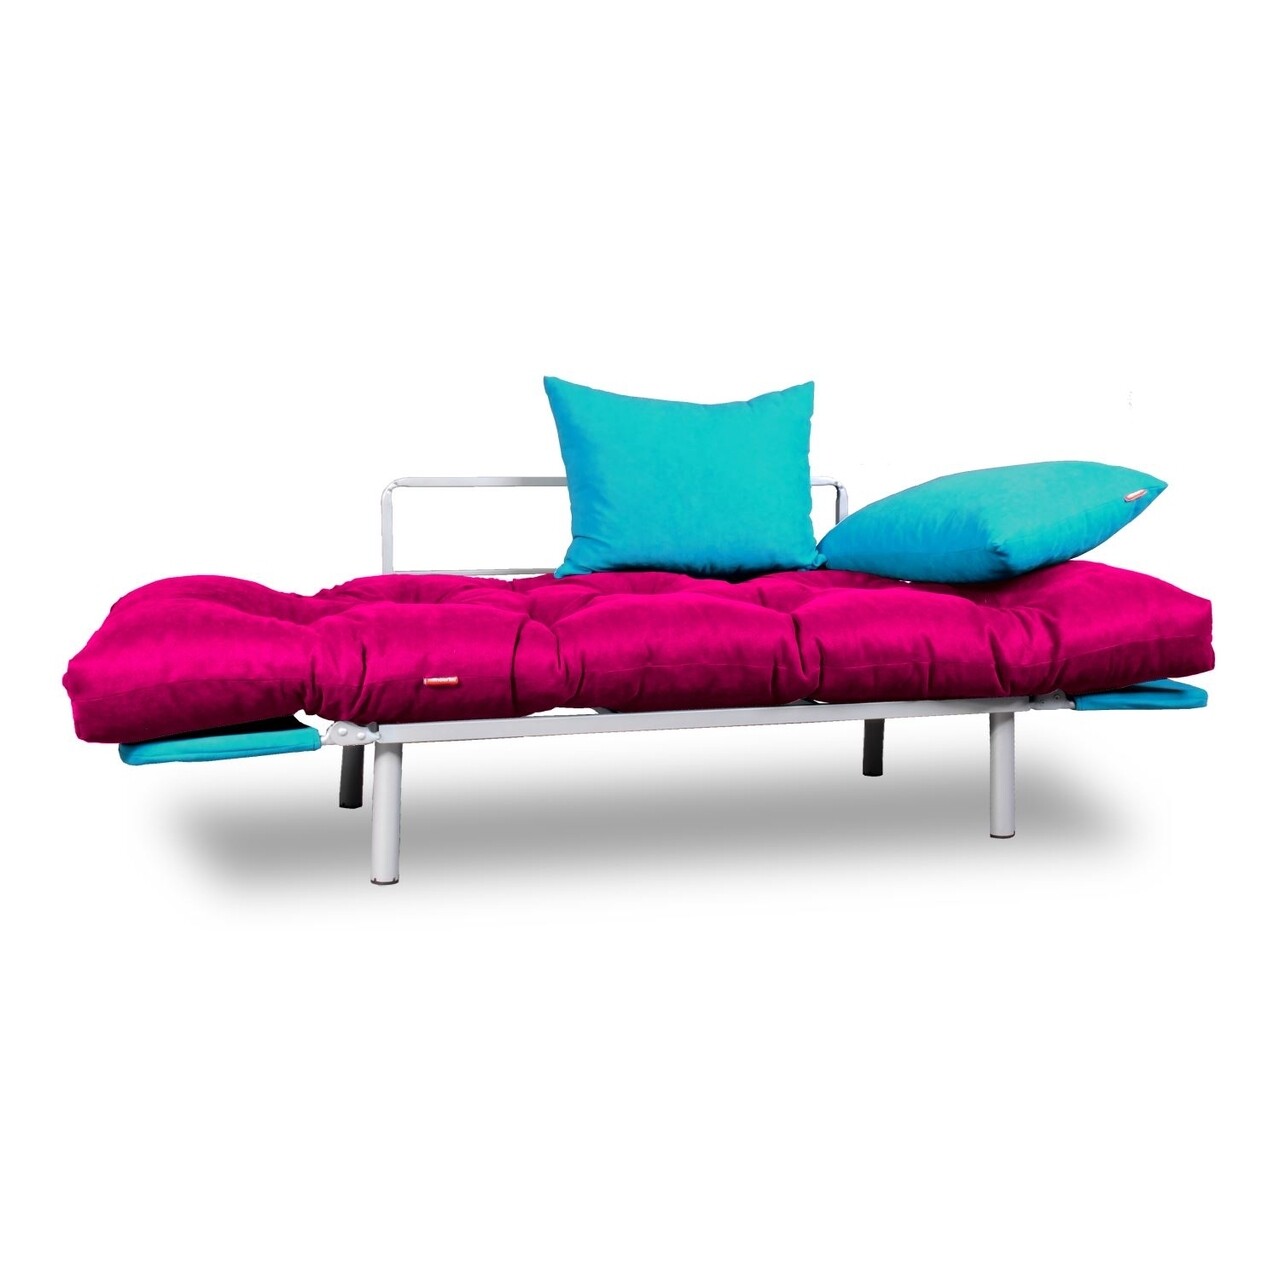 Canapea Extensibila Gauge Concept, Pink Turquoise, 2 Locuri, 190x70 Cm, Fier/poliester